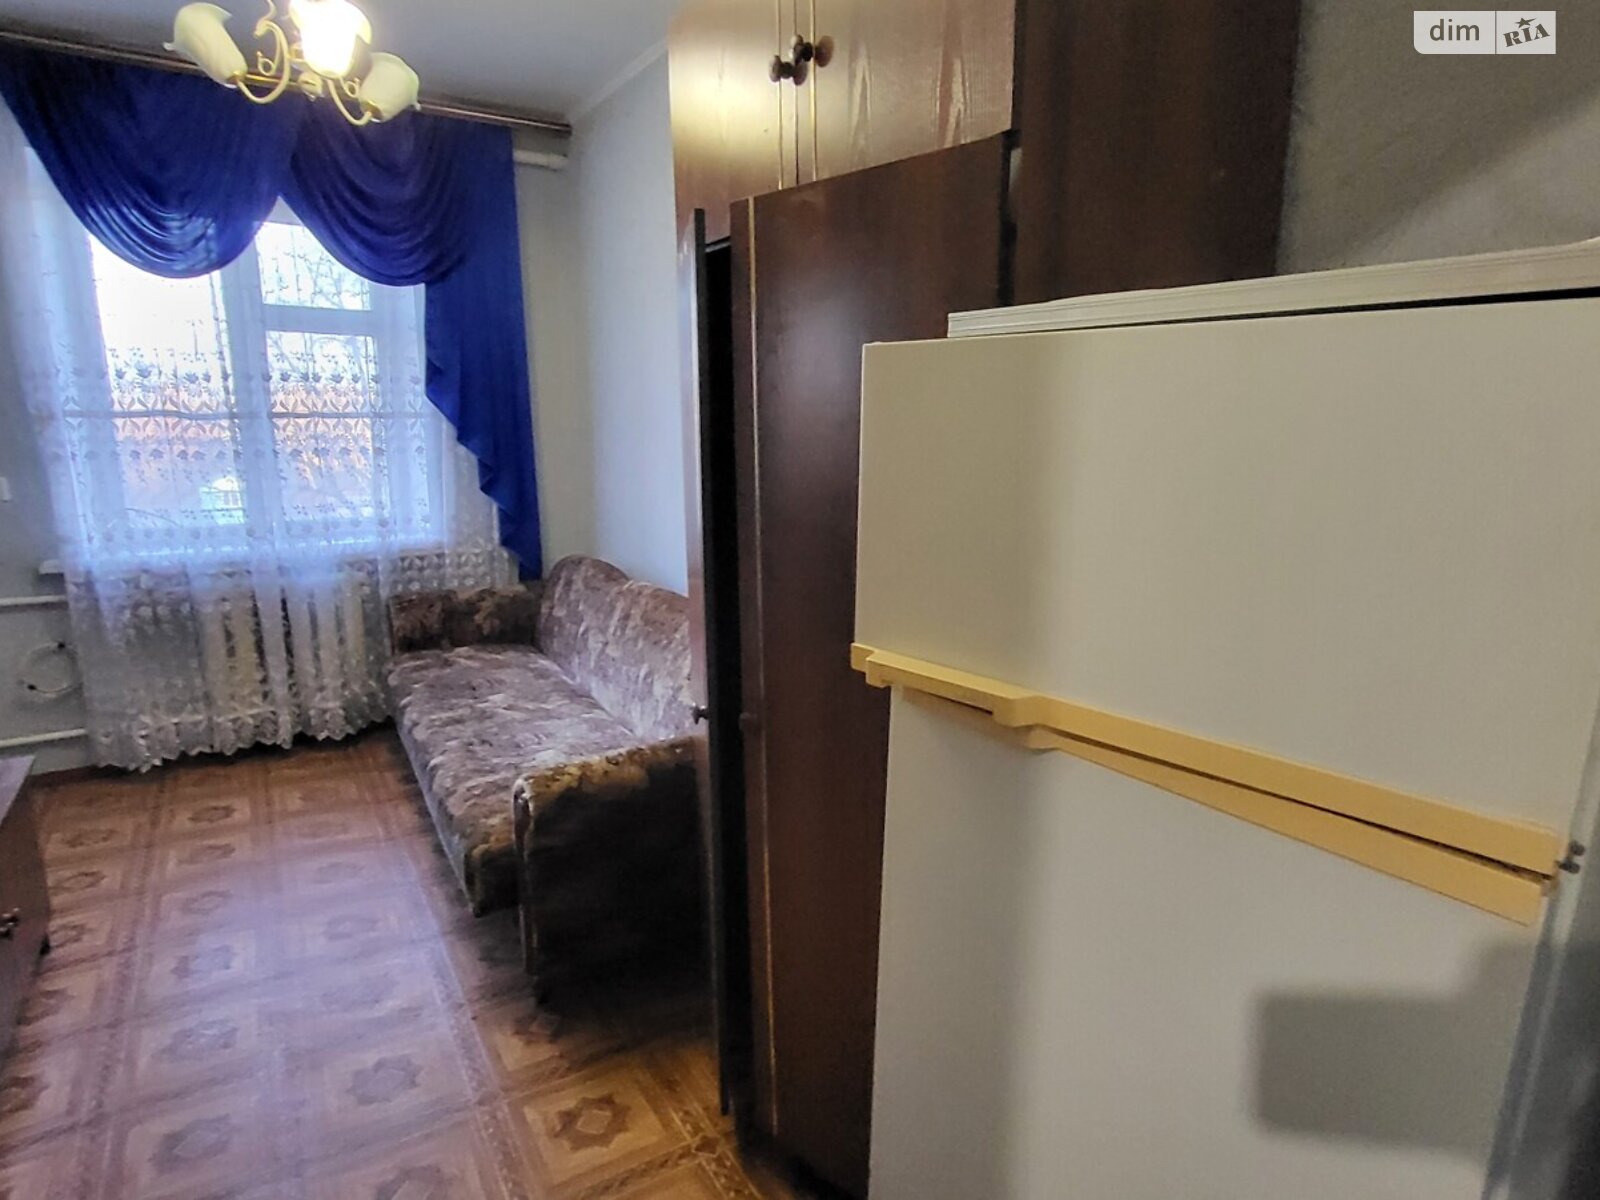 Кімната в Чернігові на вул. Гонча 12 в районі Вал на продаж фото 1